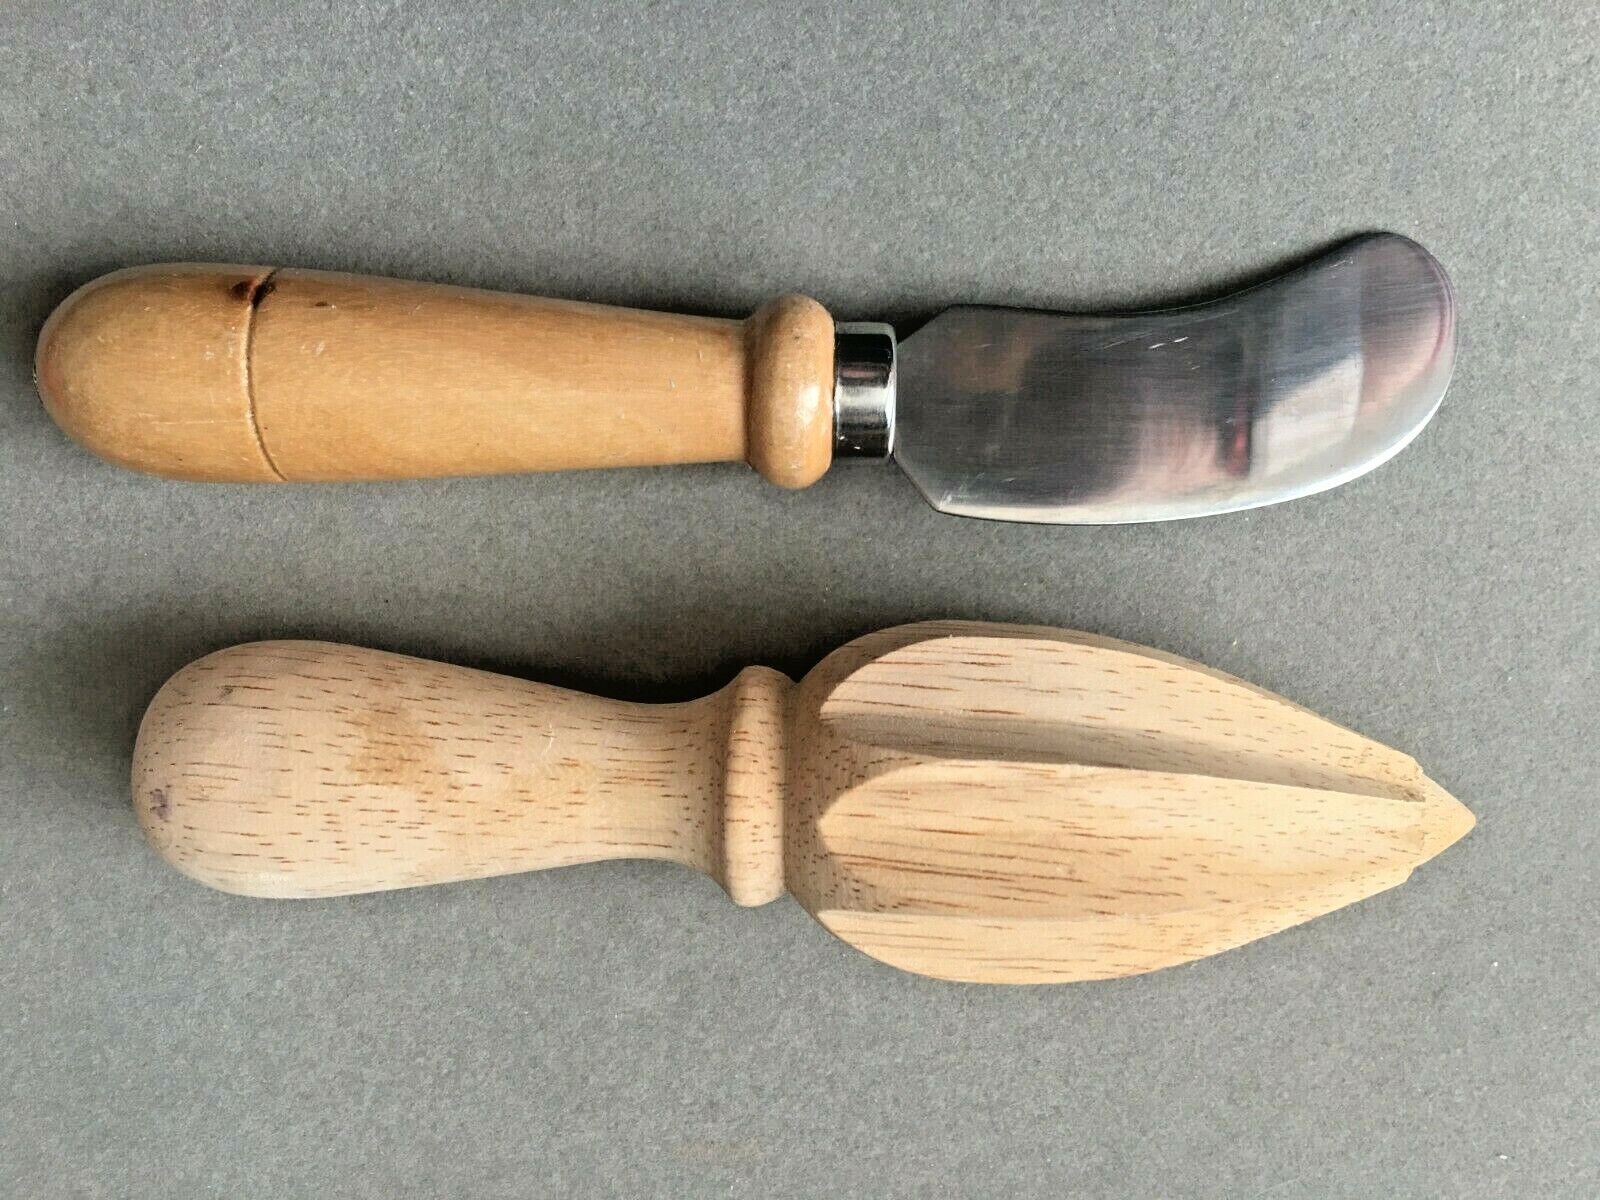 2 Lot Wooden Pusher & Spreader Knife Stainless Kitchen Utens